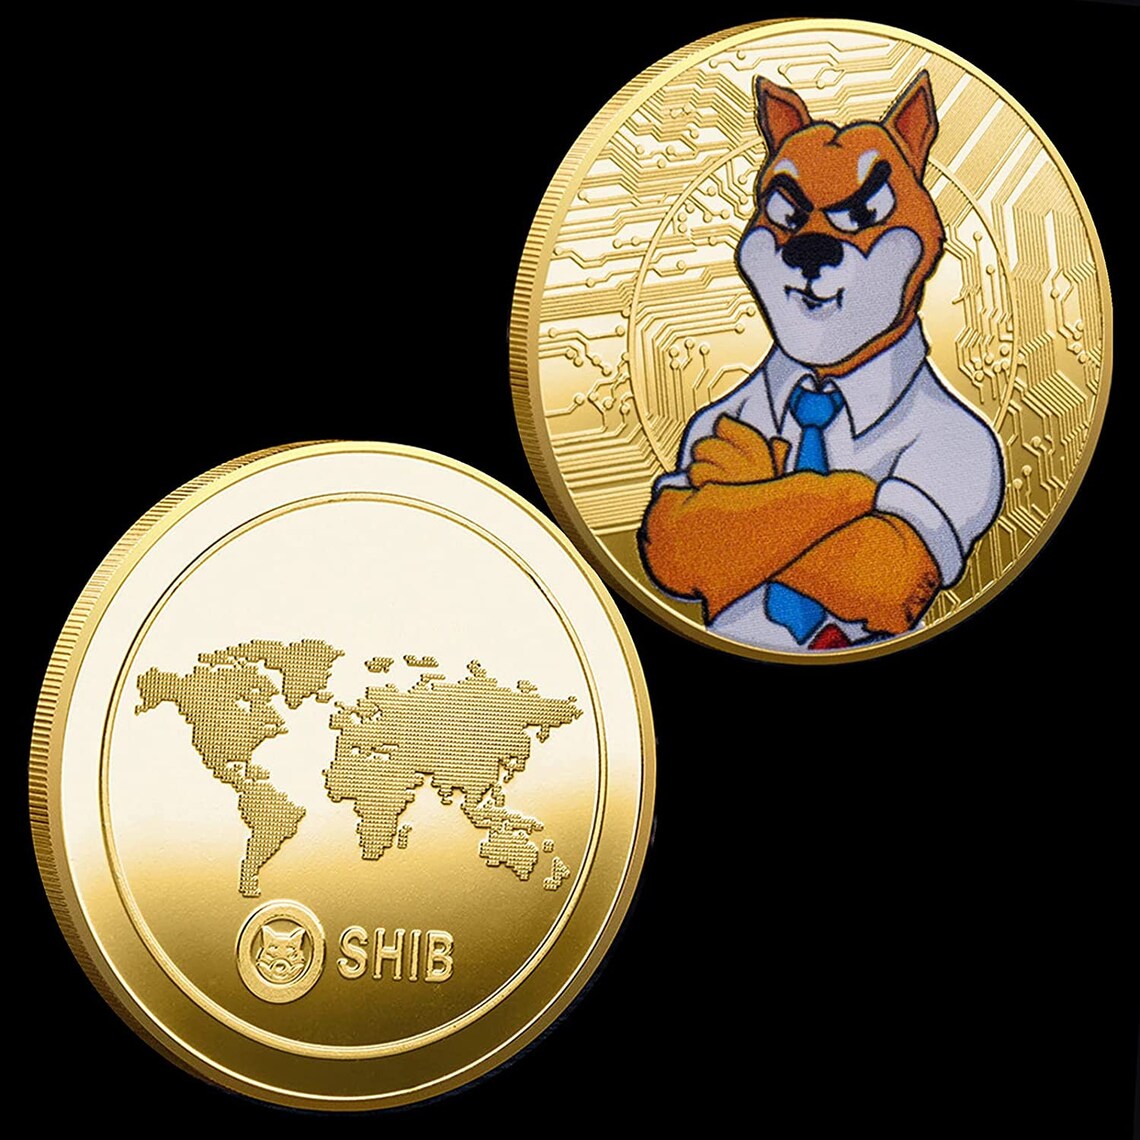 shib crypto coin price